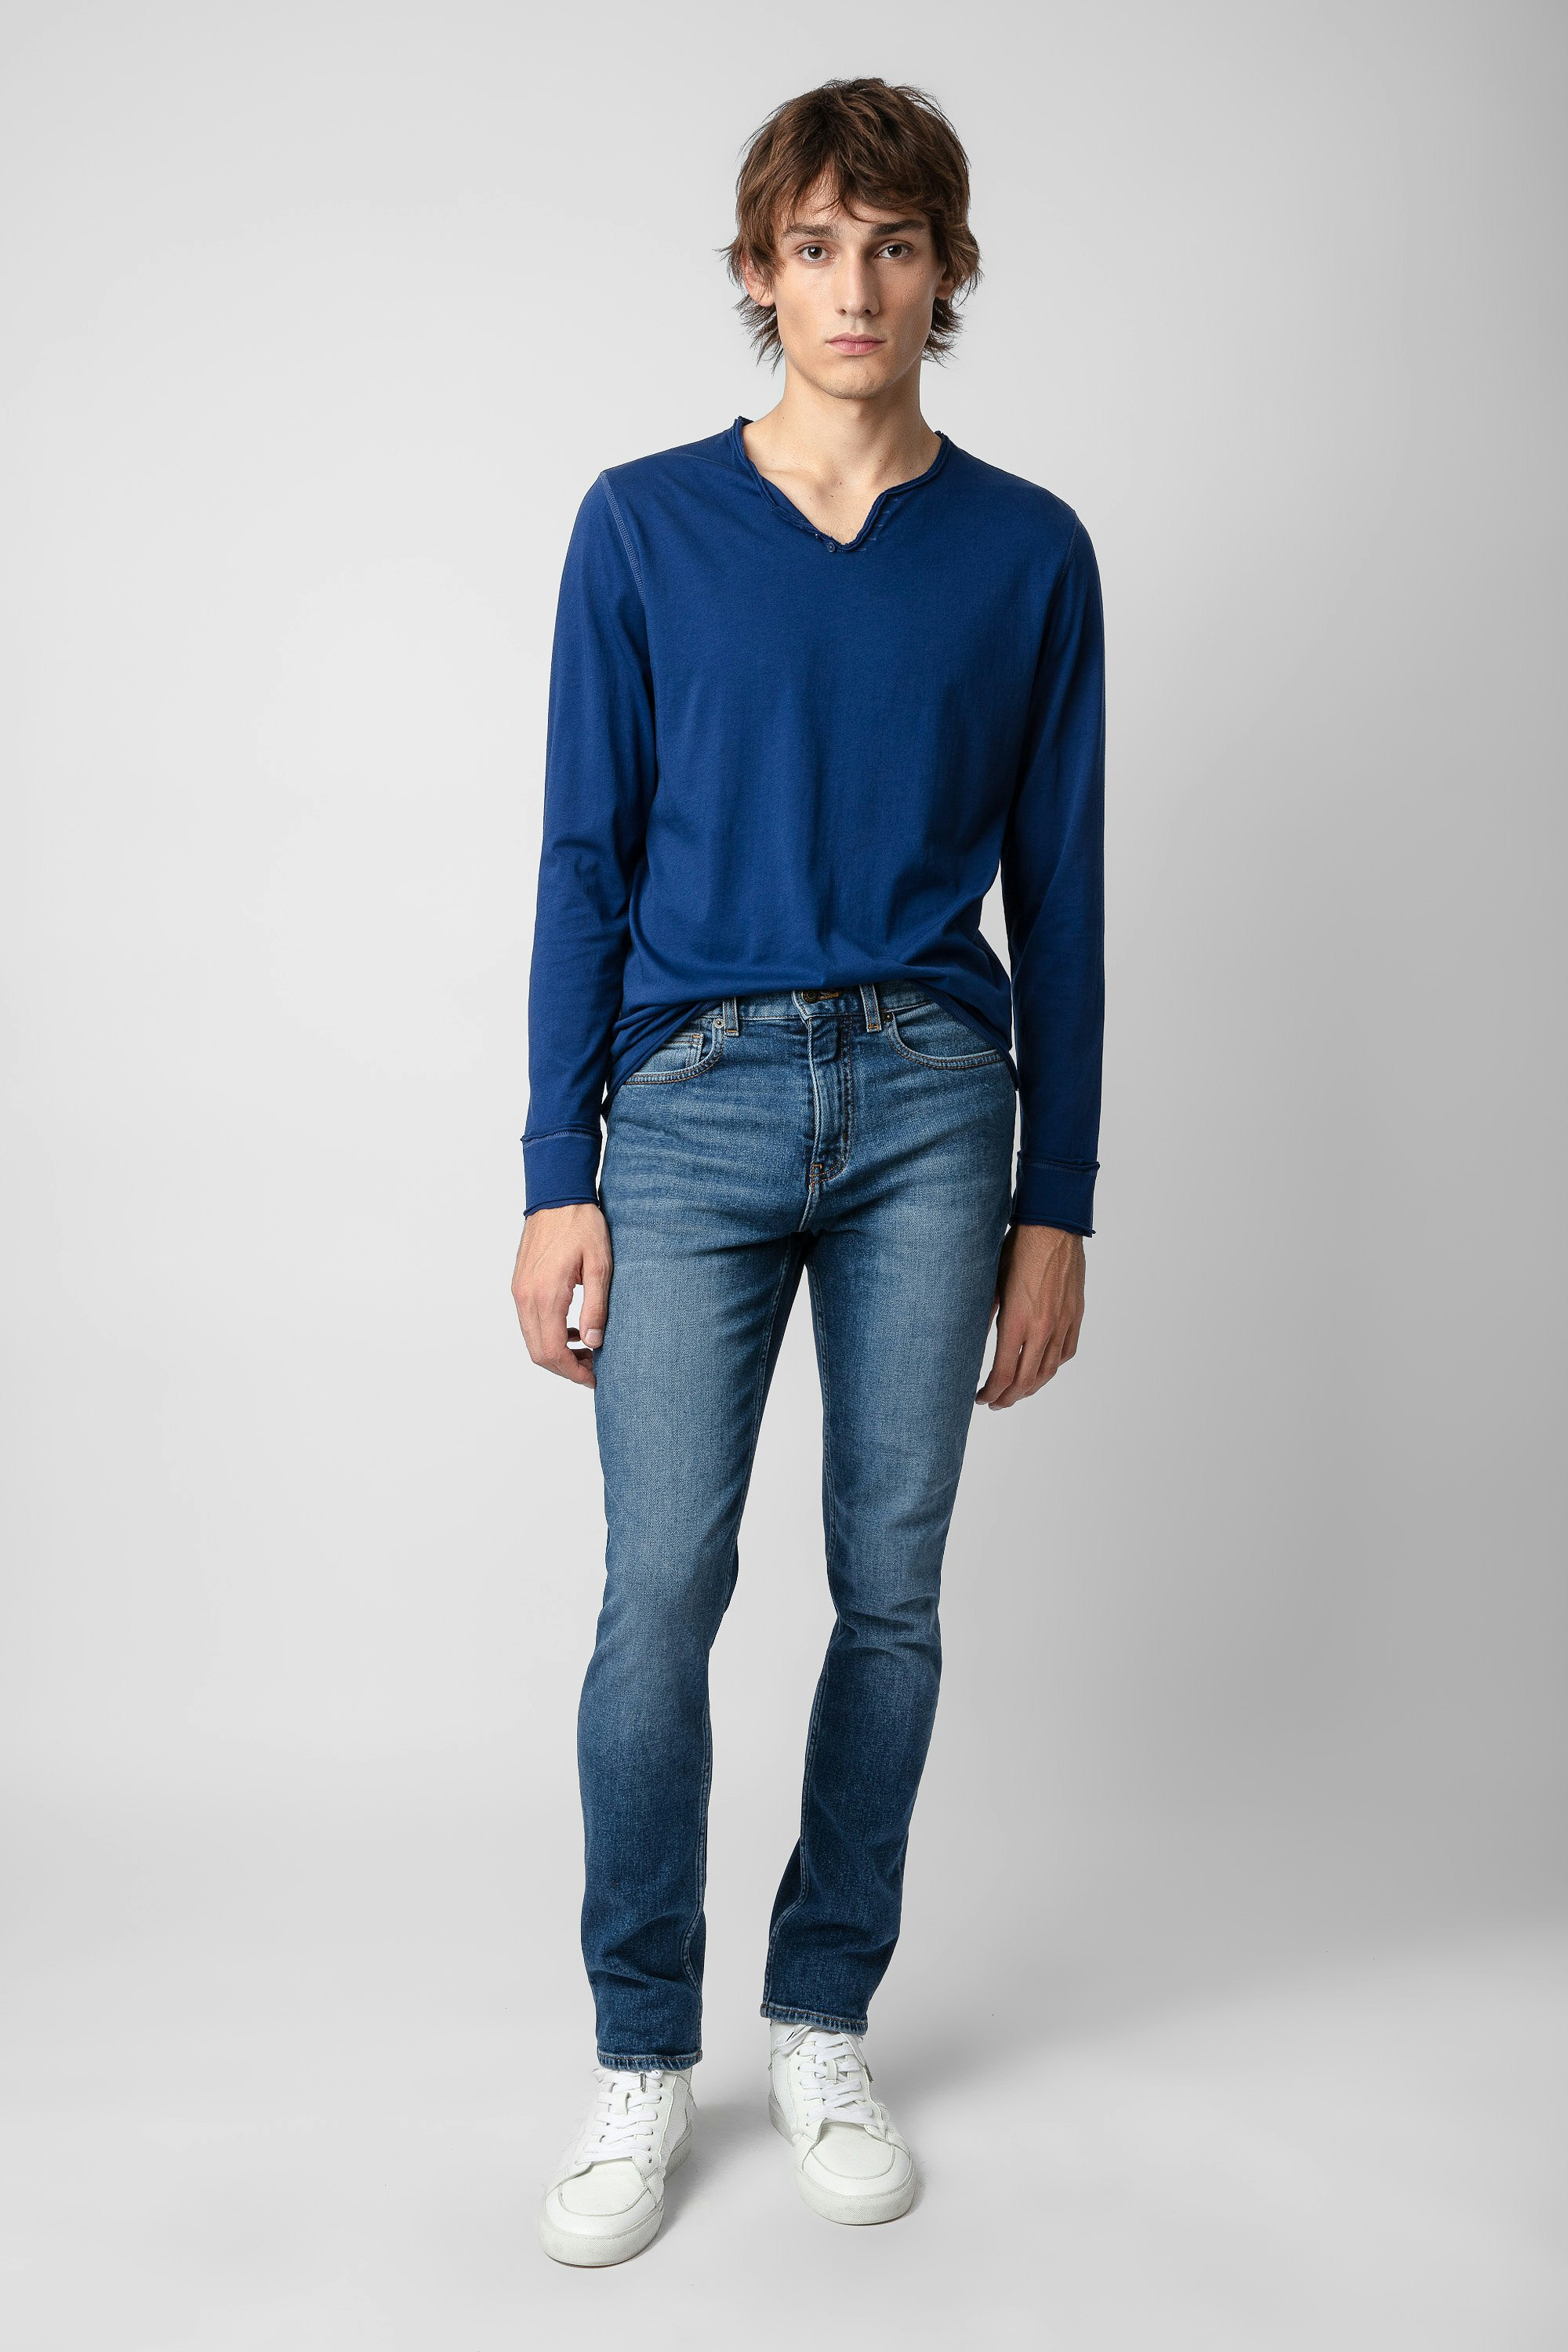 T-shirt Serafino Monastir - T-shirt da uomo a maniche lunghe in cotone blu reale con collo a serafino.